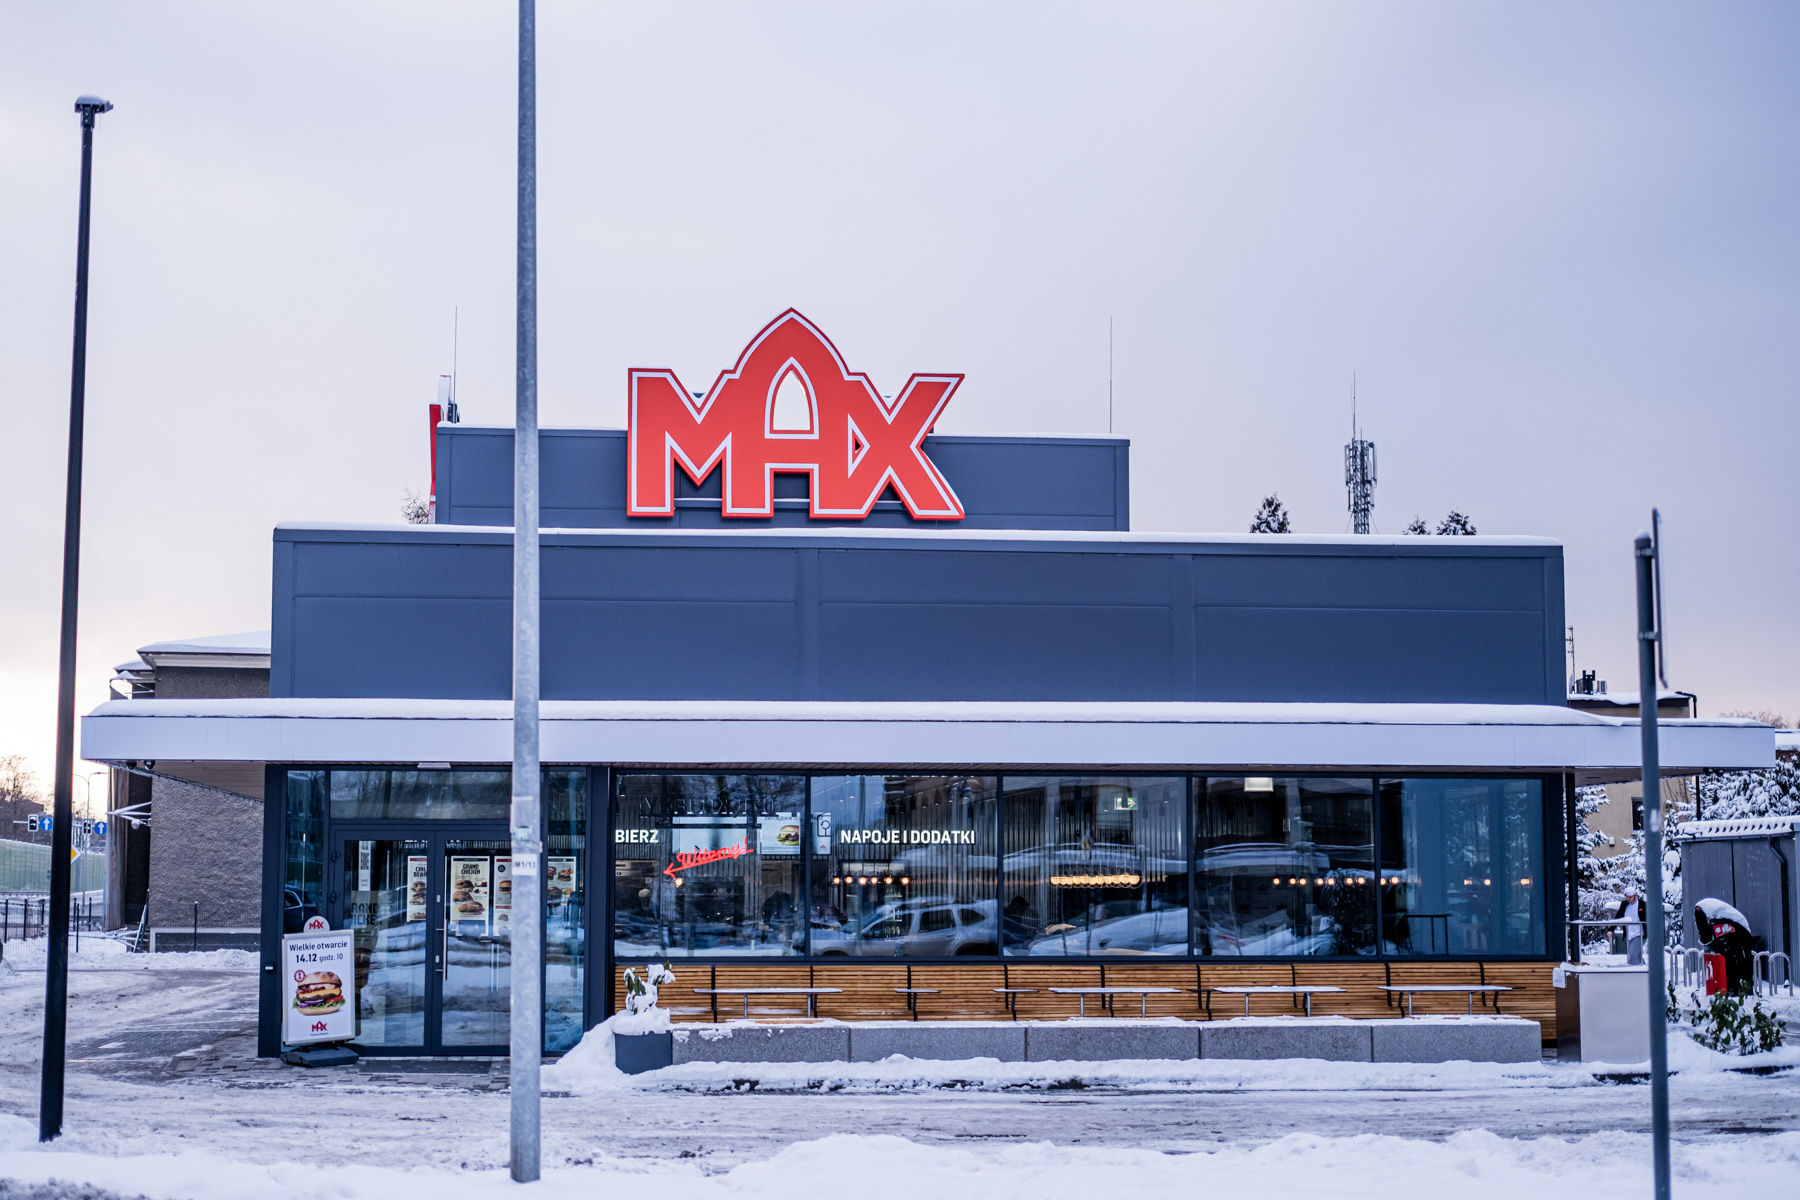 Images MAX Premium Burgers